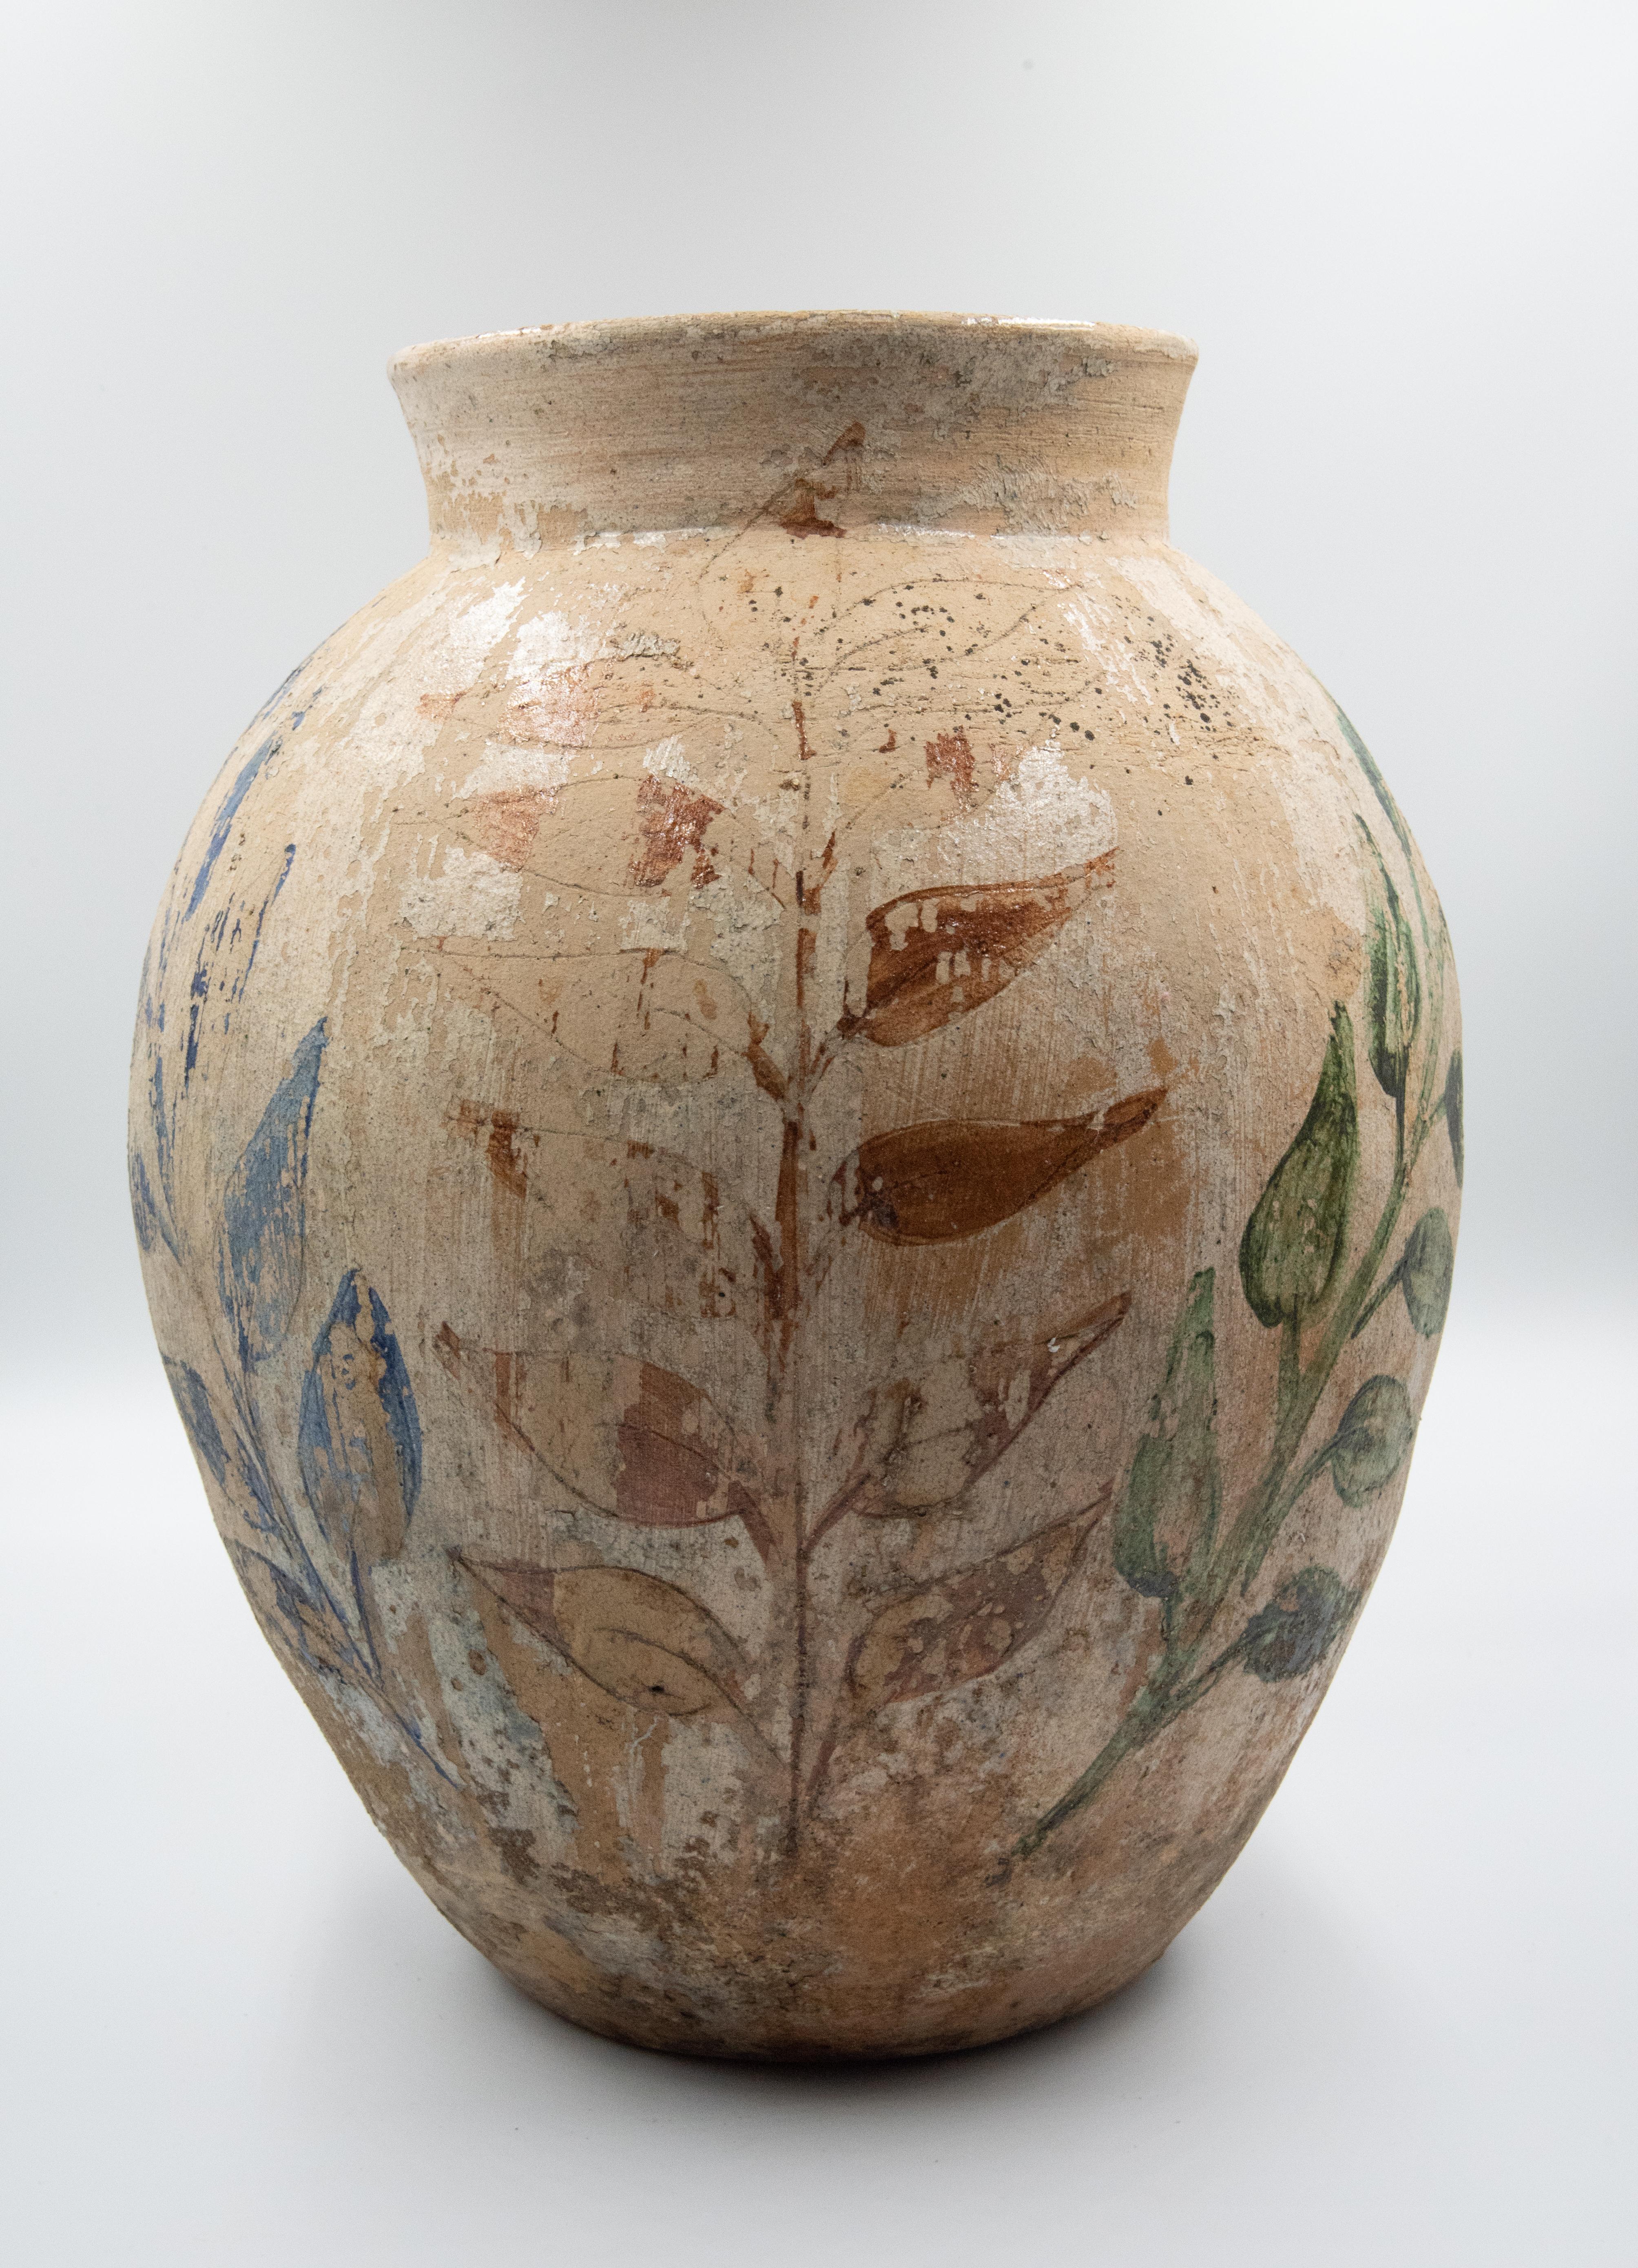 Contemporary Dolores Porras Mexican Vessel Antique Rustic Clay Vase Made in Oaxaca, 1984